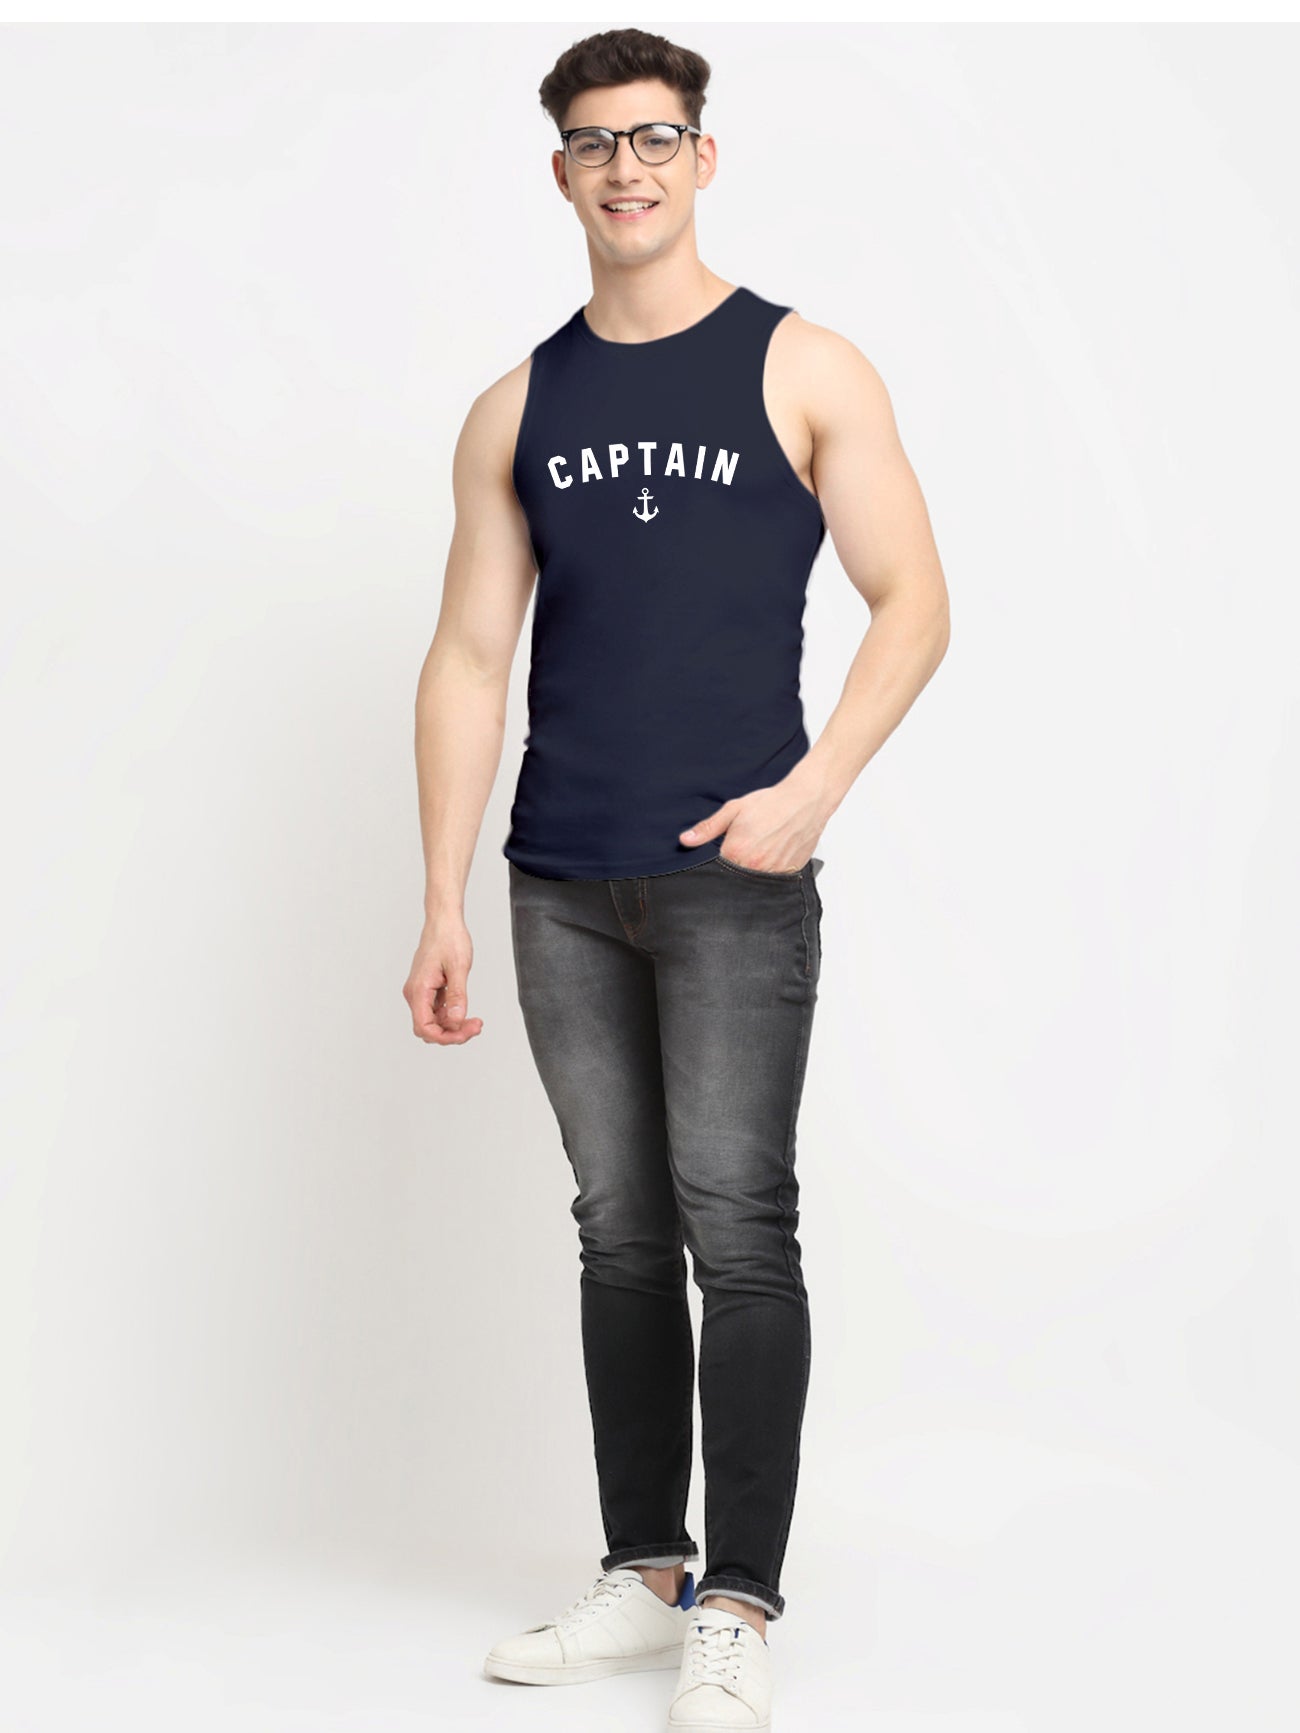 Men's Captain Dry Fit Sports Gym Vest - Friskers